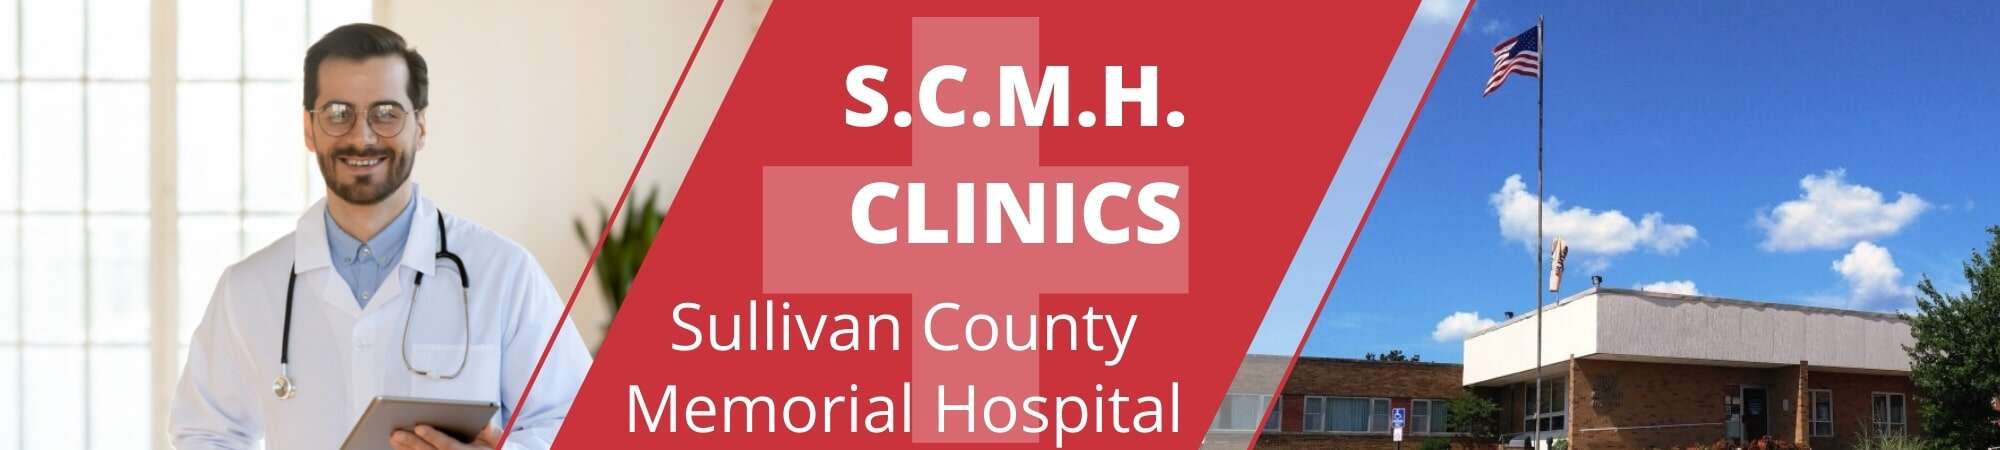 SCMH Clinics